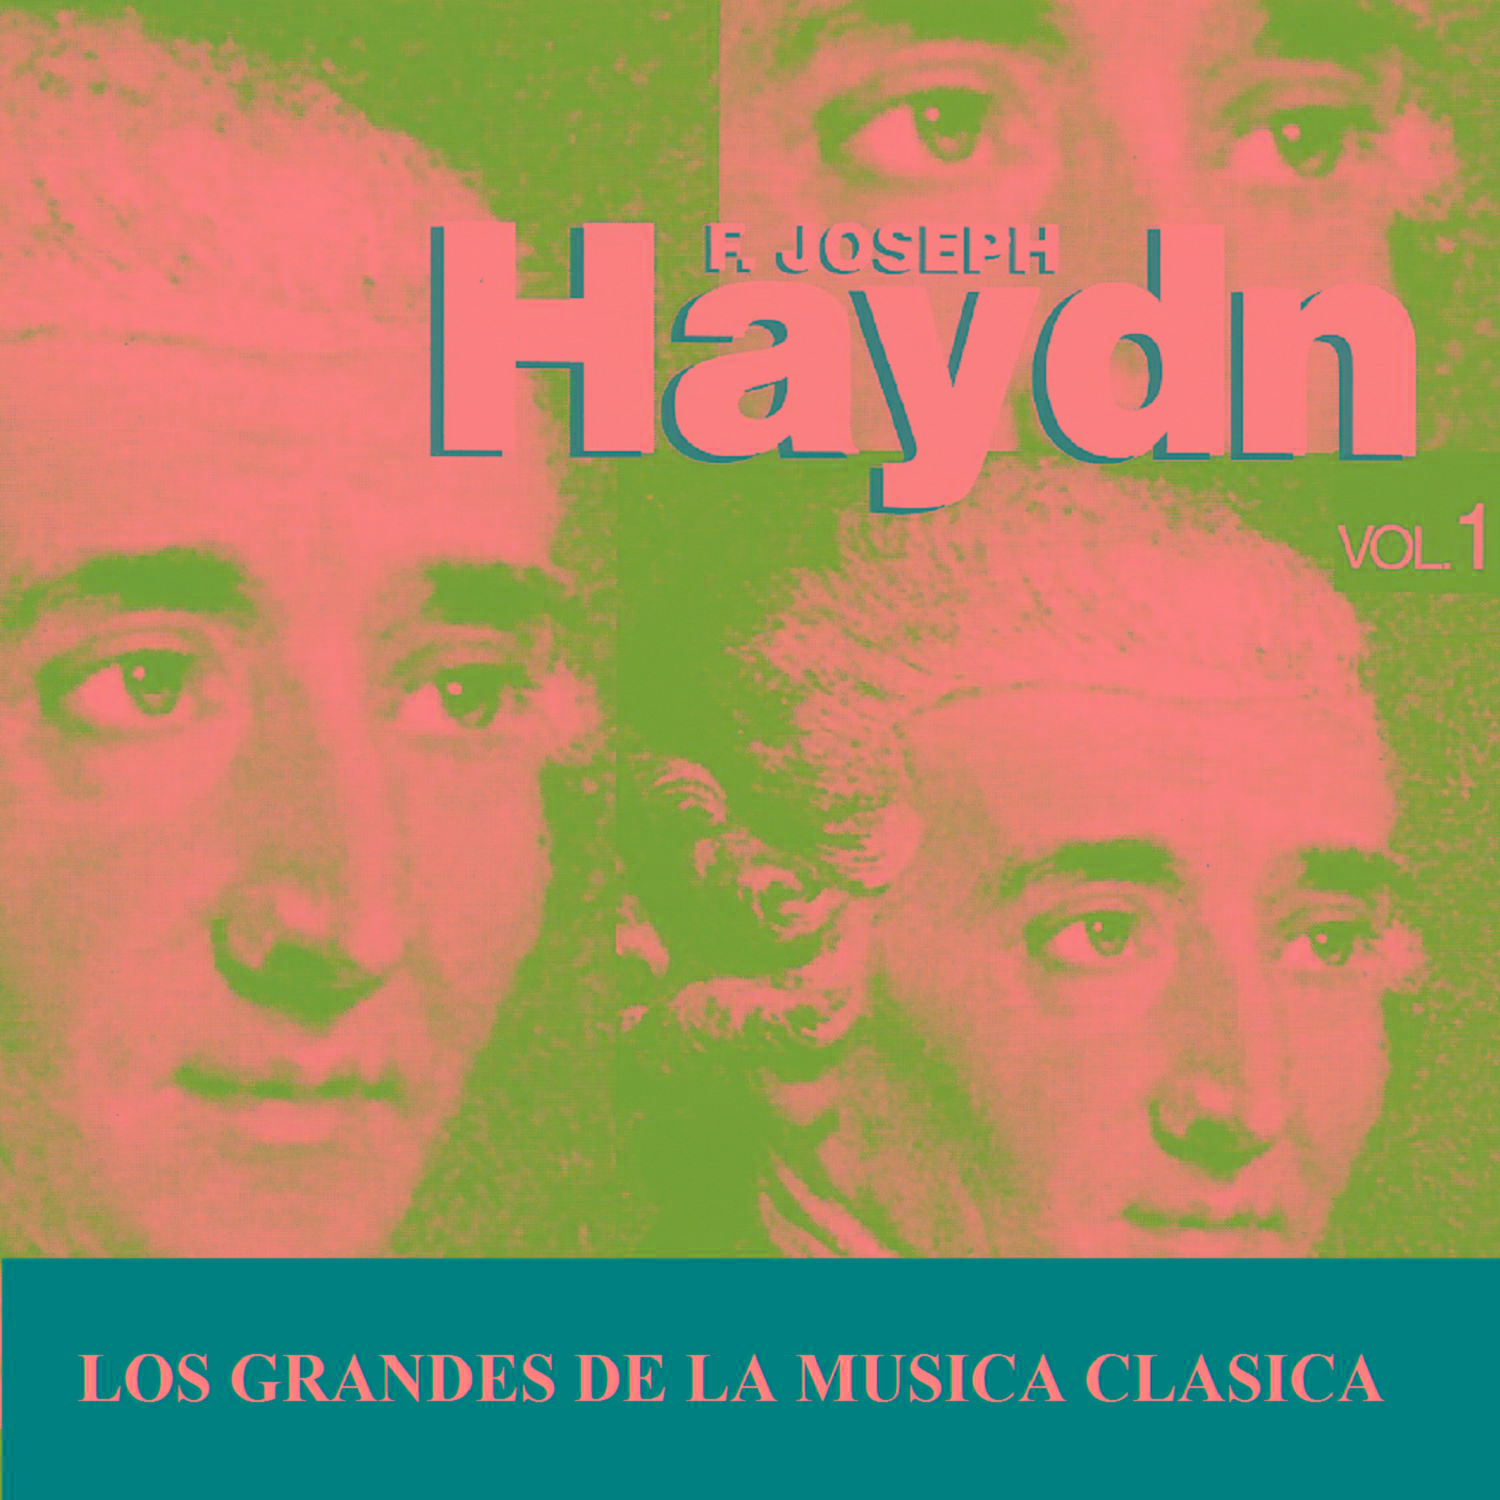 Los Grandes de la Musica Clasica - Joseph Haydn Vol. 1